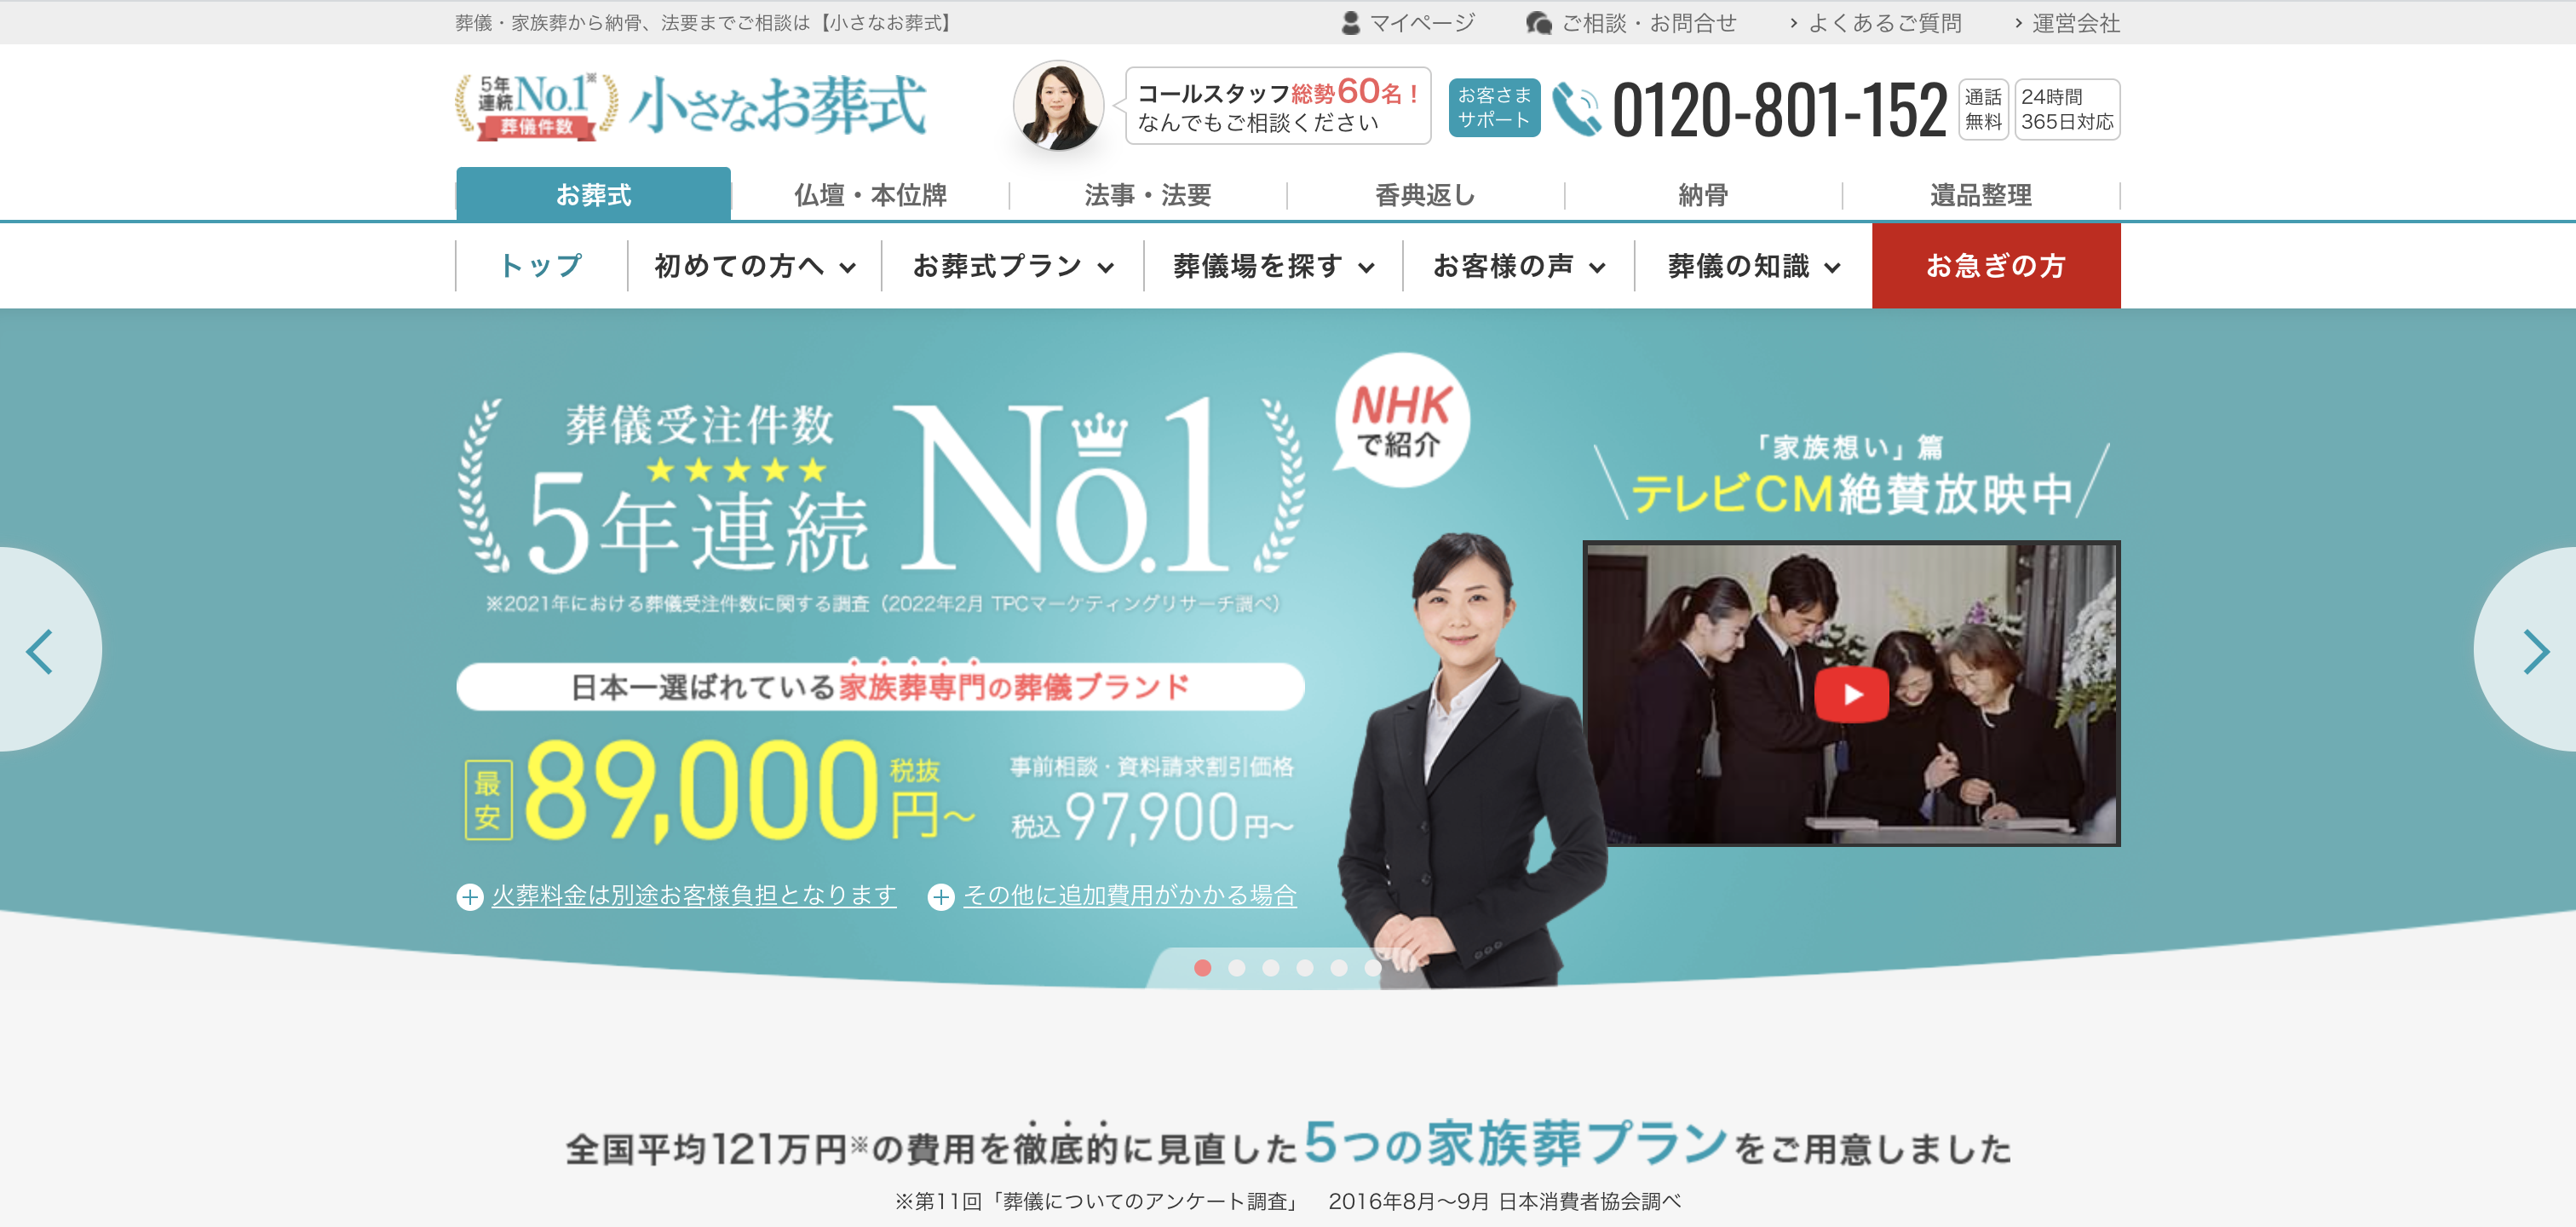 「小さなお葬式」は、お客様満足度95％、葬儀受注件数5年連続売上No. 1と豊富な実績と高い品質で日本一選ばれています。